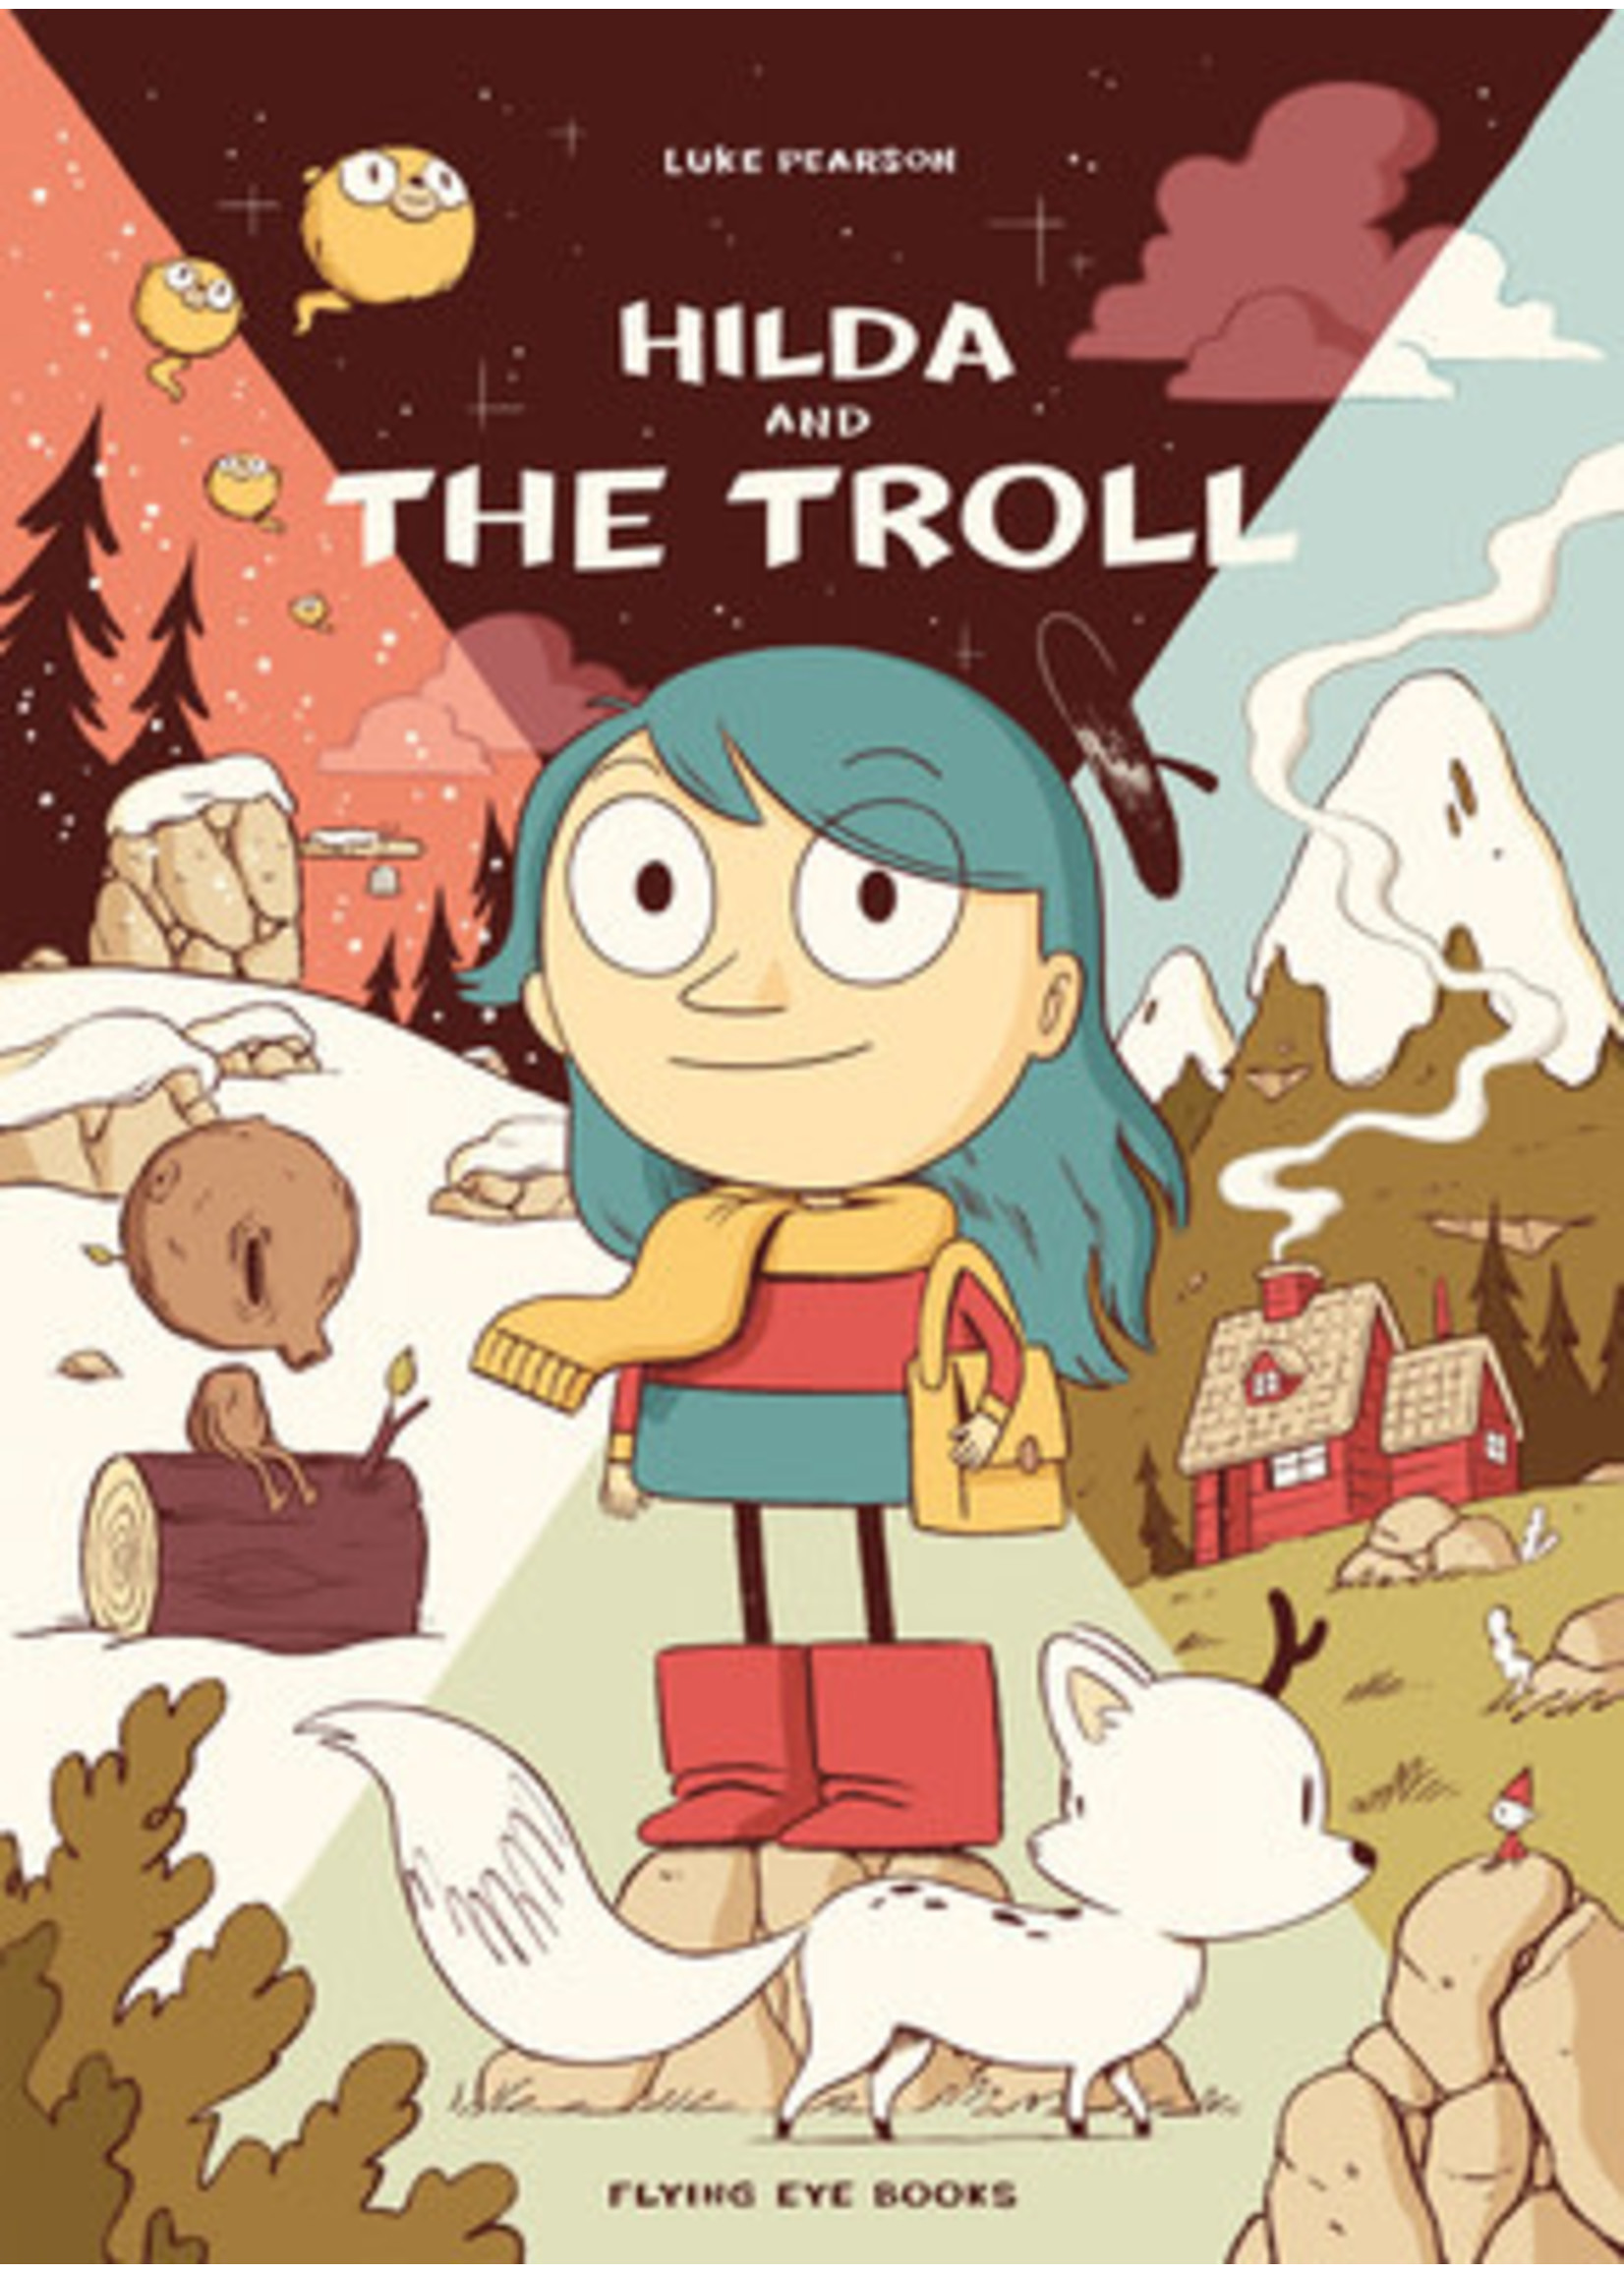 Hilda and the Troll (Hilda #1) by Luke Pearson